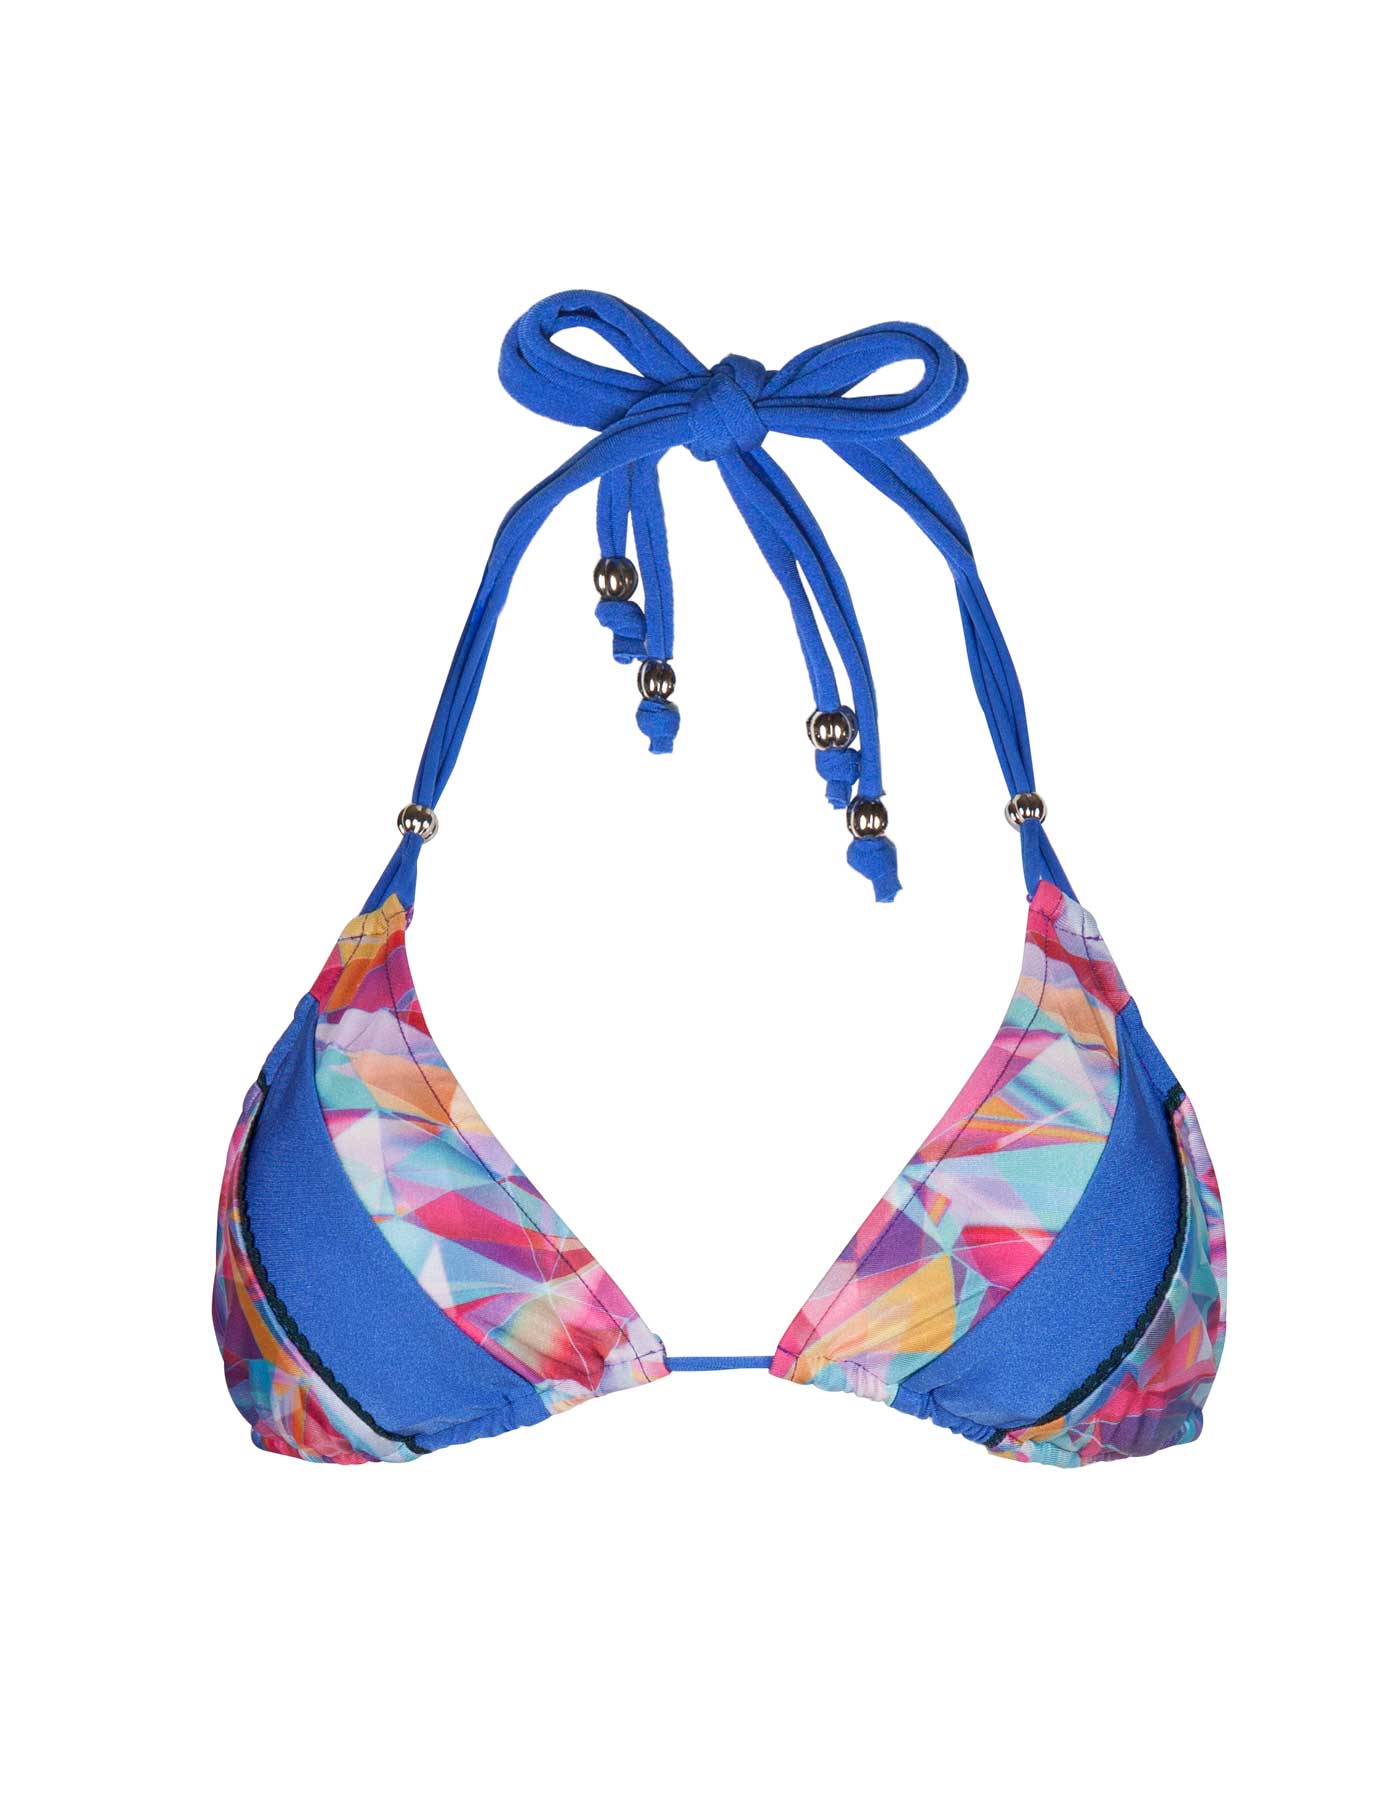 Light Blue Bikini Top - Swimsuit Top - Tie-Front Swim Top - Lulus